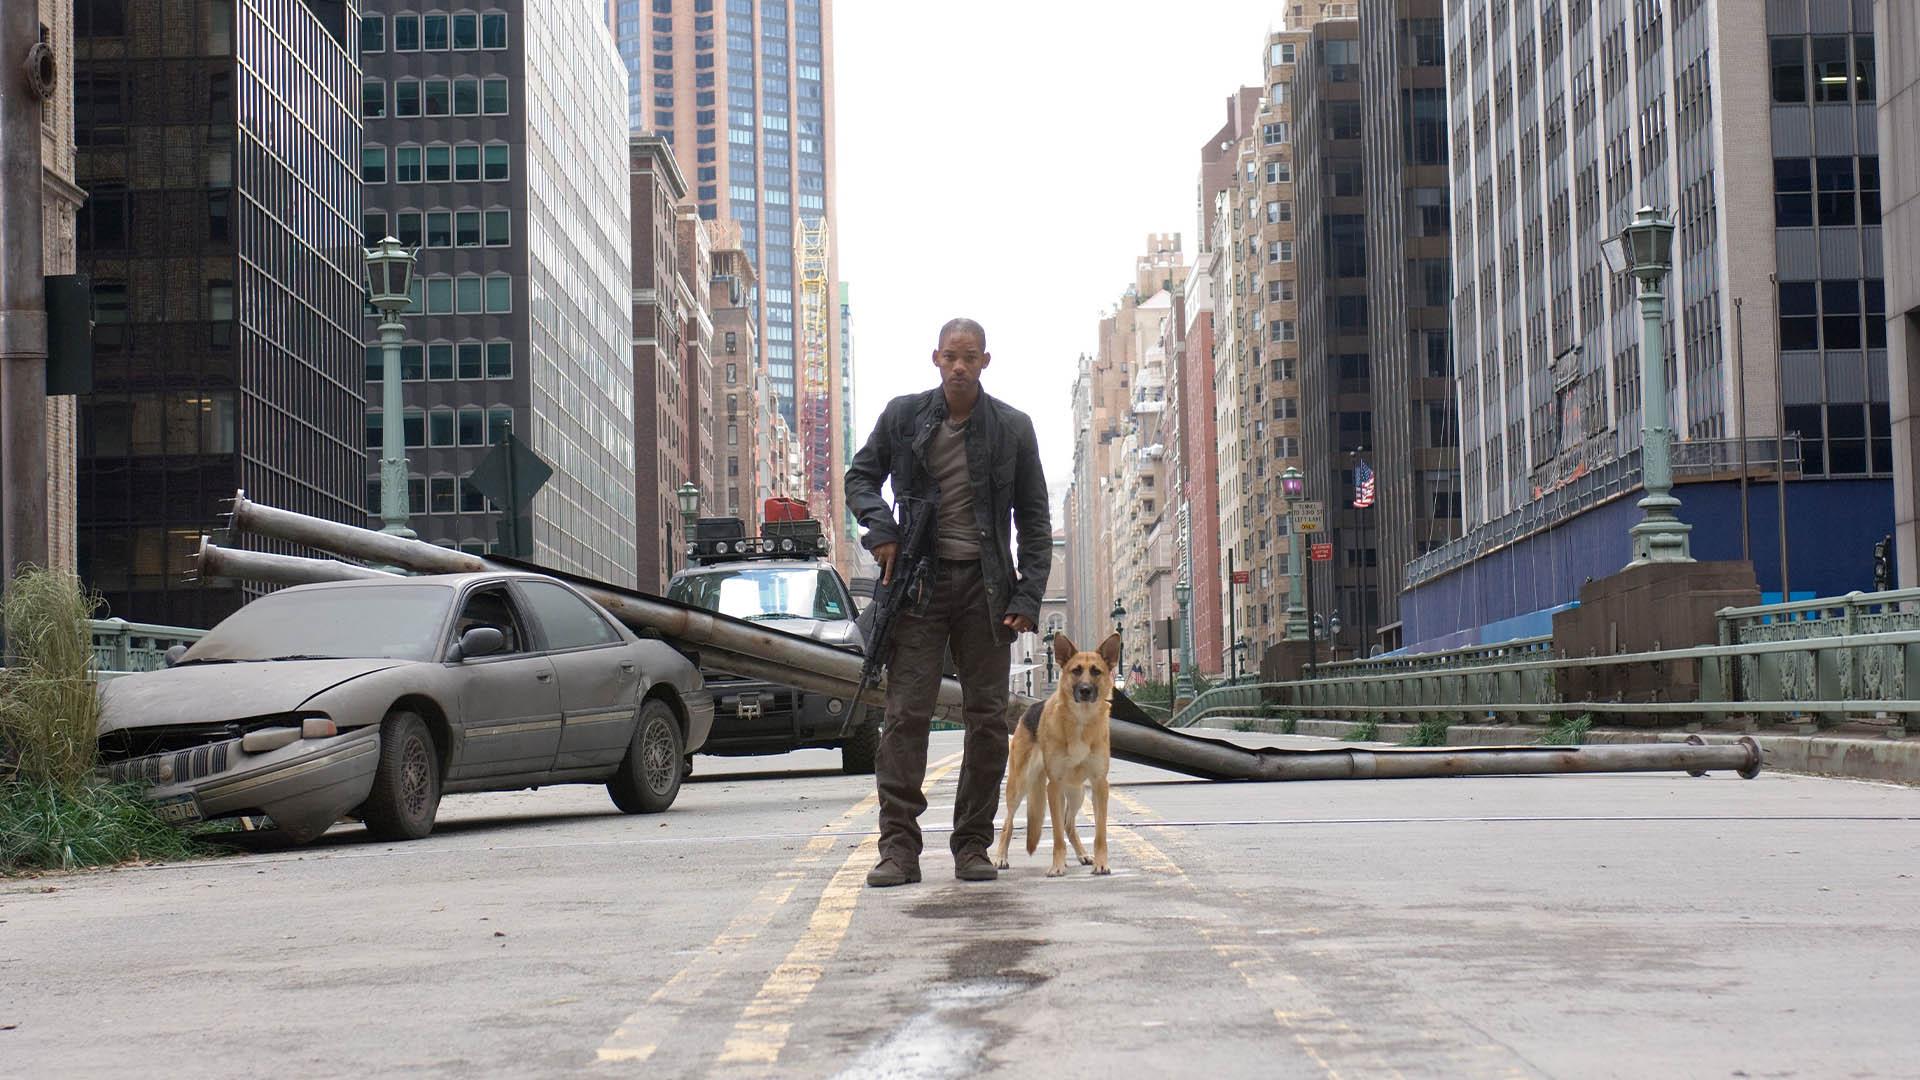 ویل اسمیت در نقش دکتر رابرت نویل و سم سگ او در یکی از خیابان‌های شهر نیویورک در فیلم i am legend